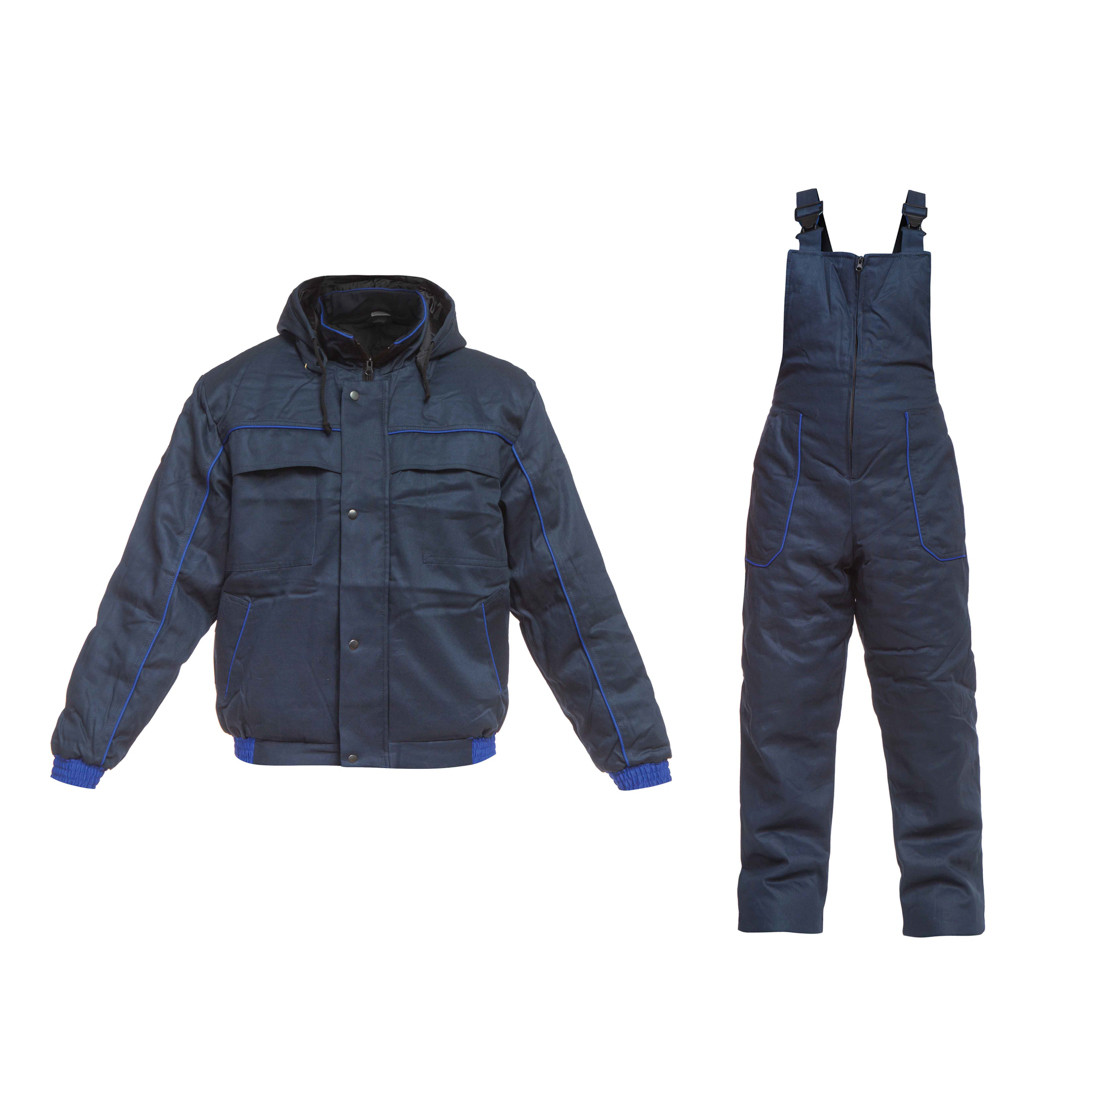 TORNADO Winter Set - Safetywear